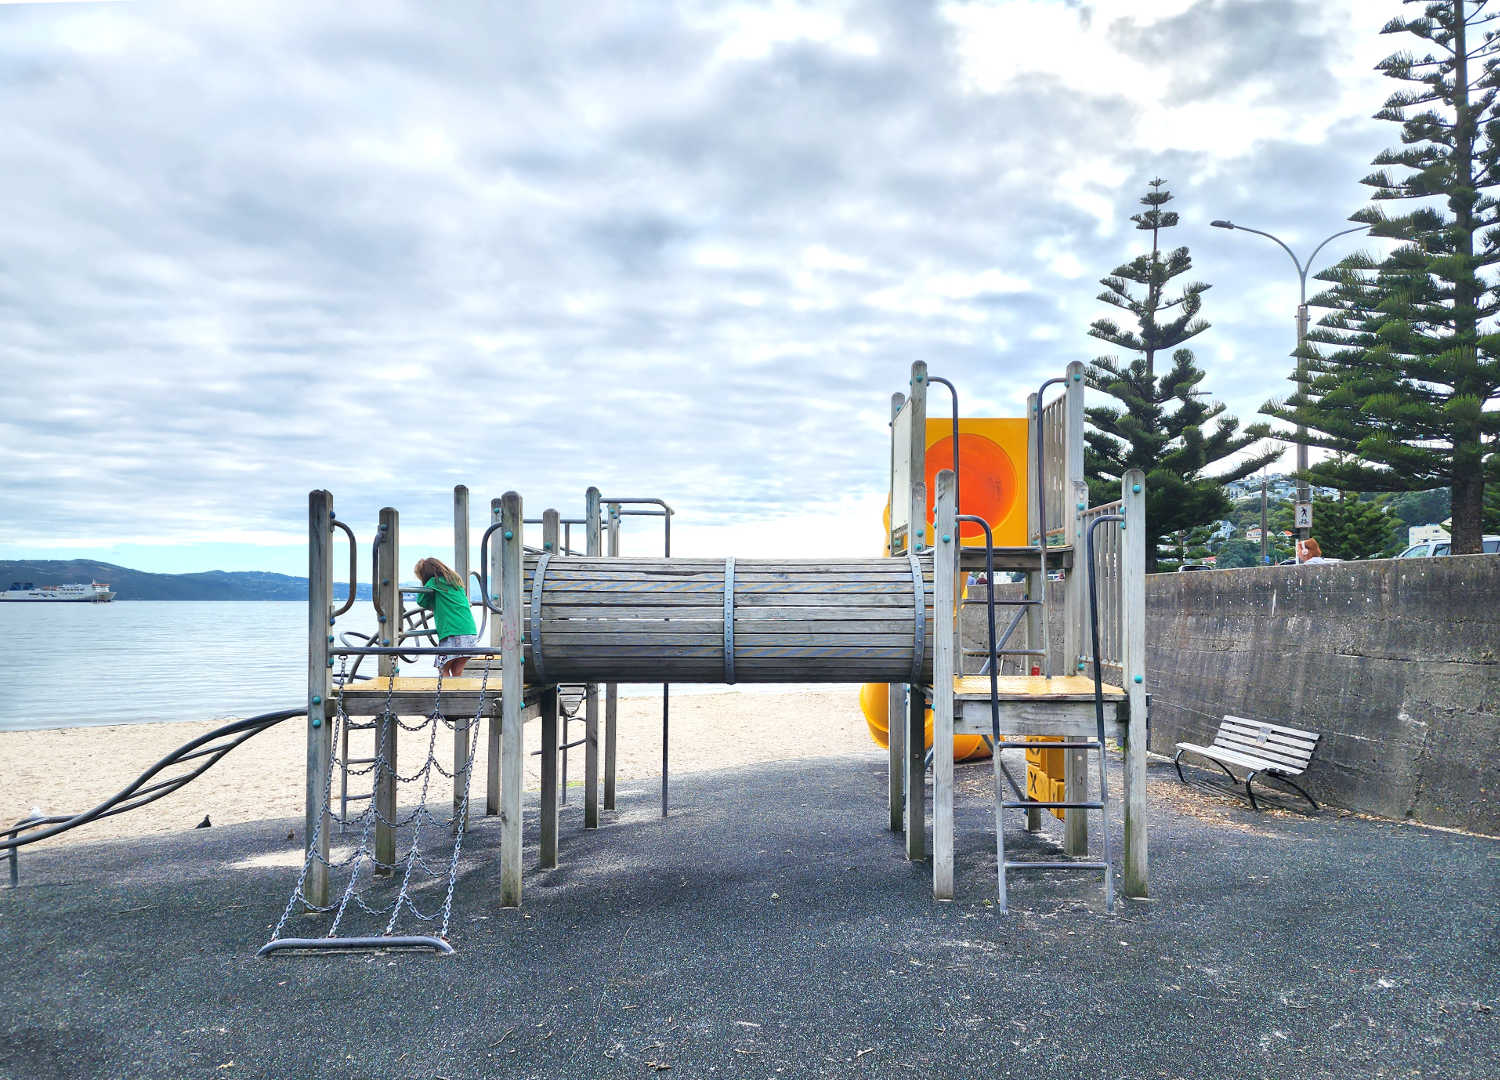 Wellington Oriental Parade children's playground overlooking sandy beach, North Island, NZ